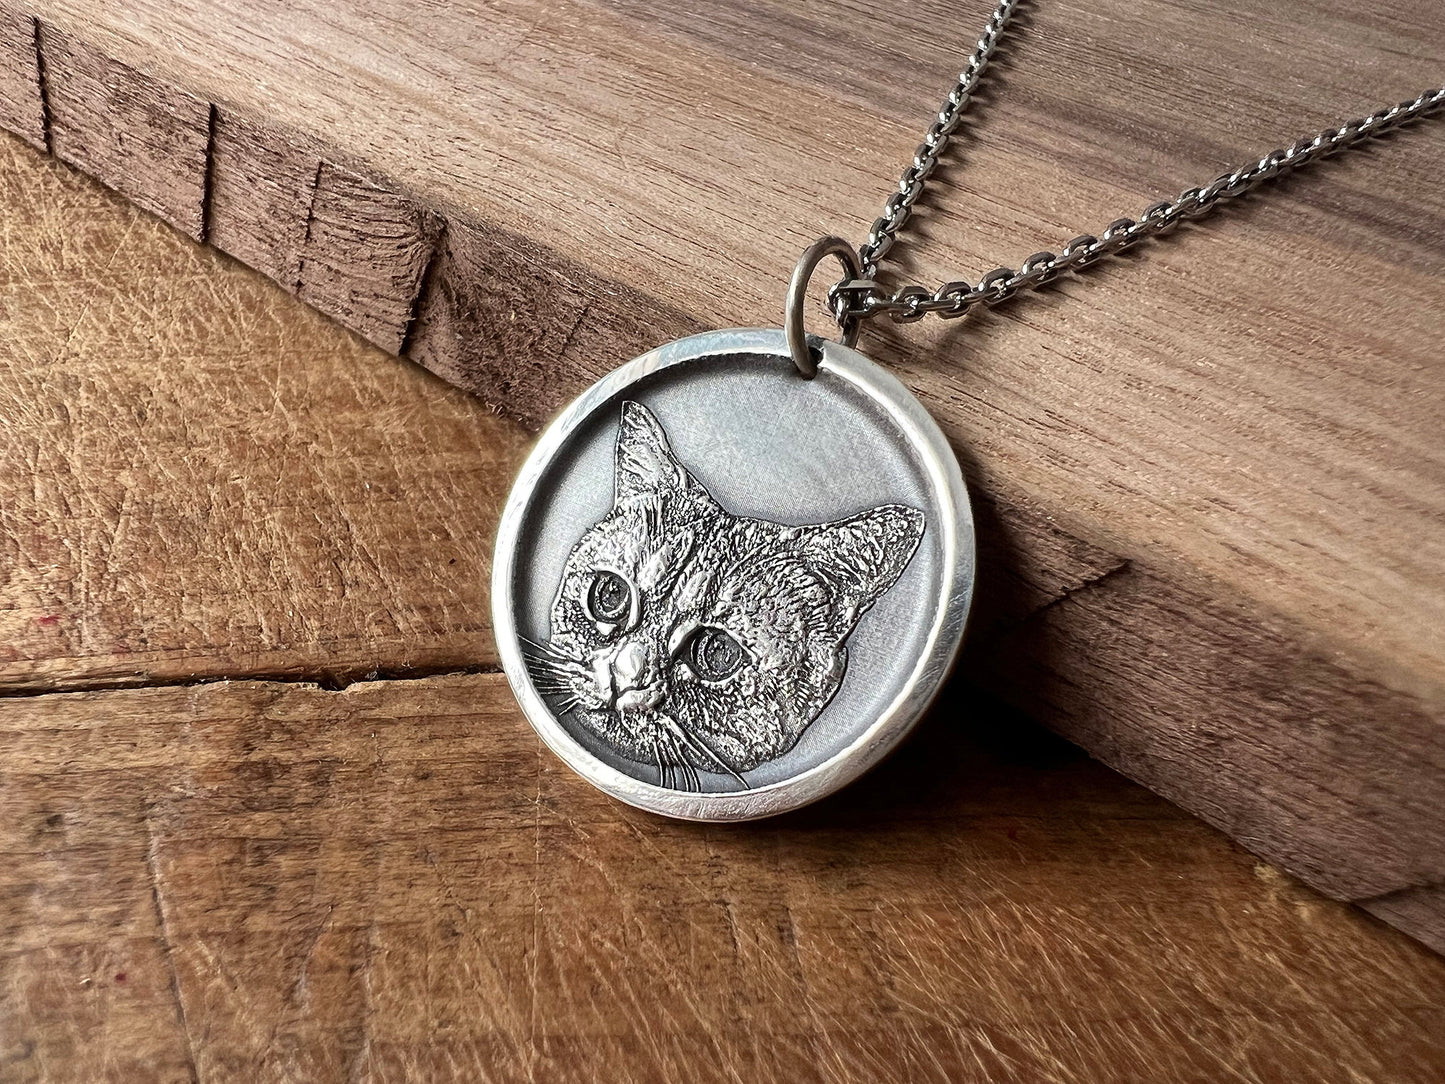 Pet Portrait Necklace | Silver Personalized Pet Memorial Necklace